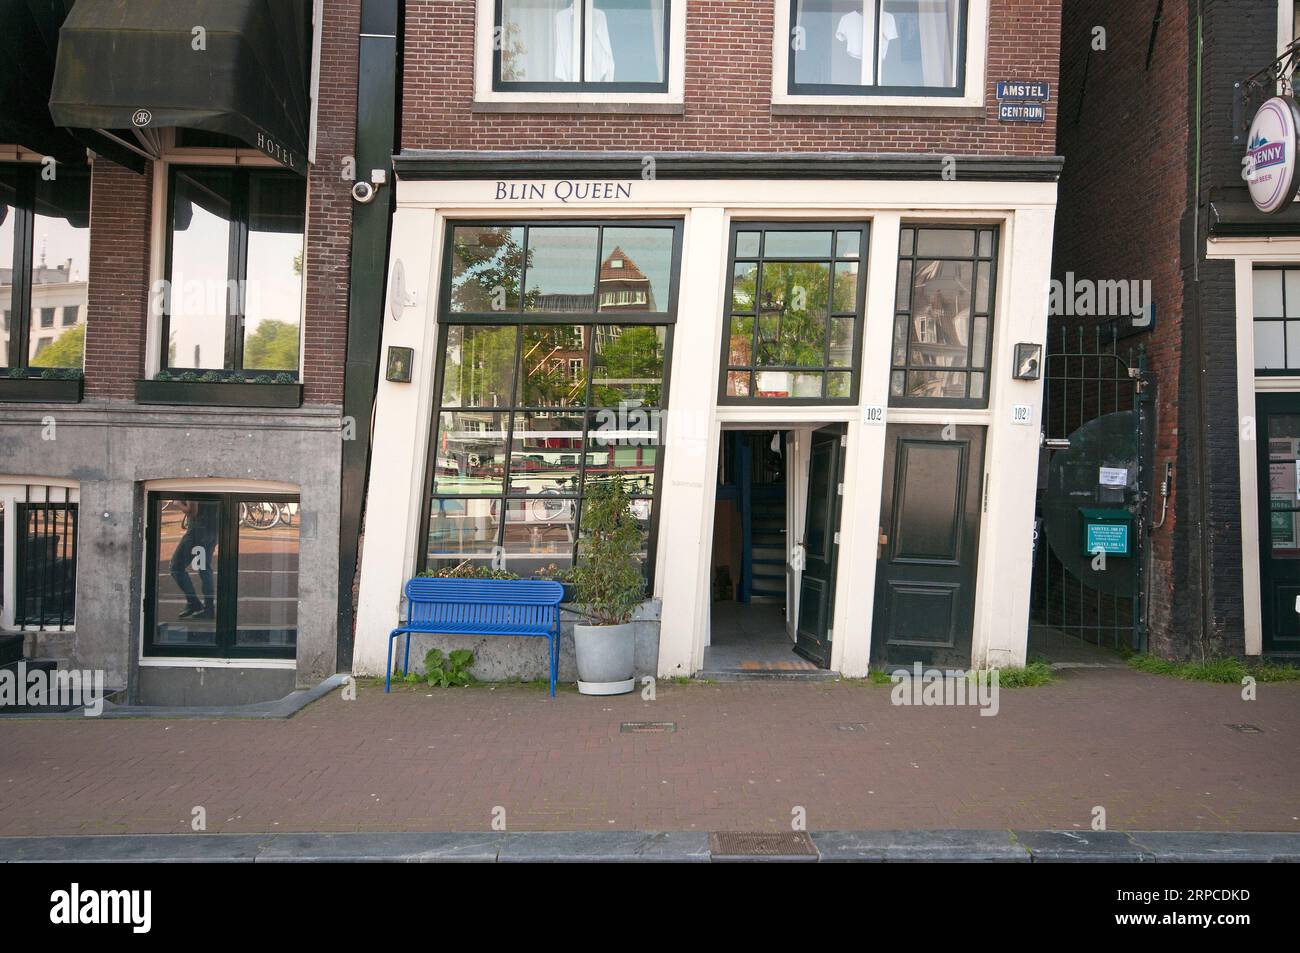 Ristorante Blin Queen in un edificio storto, via Amstel, Amsterdam, Paesi Bassi Foto Stock